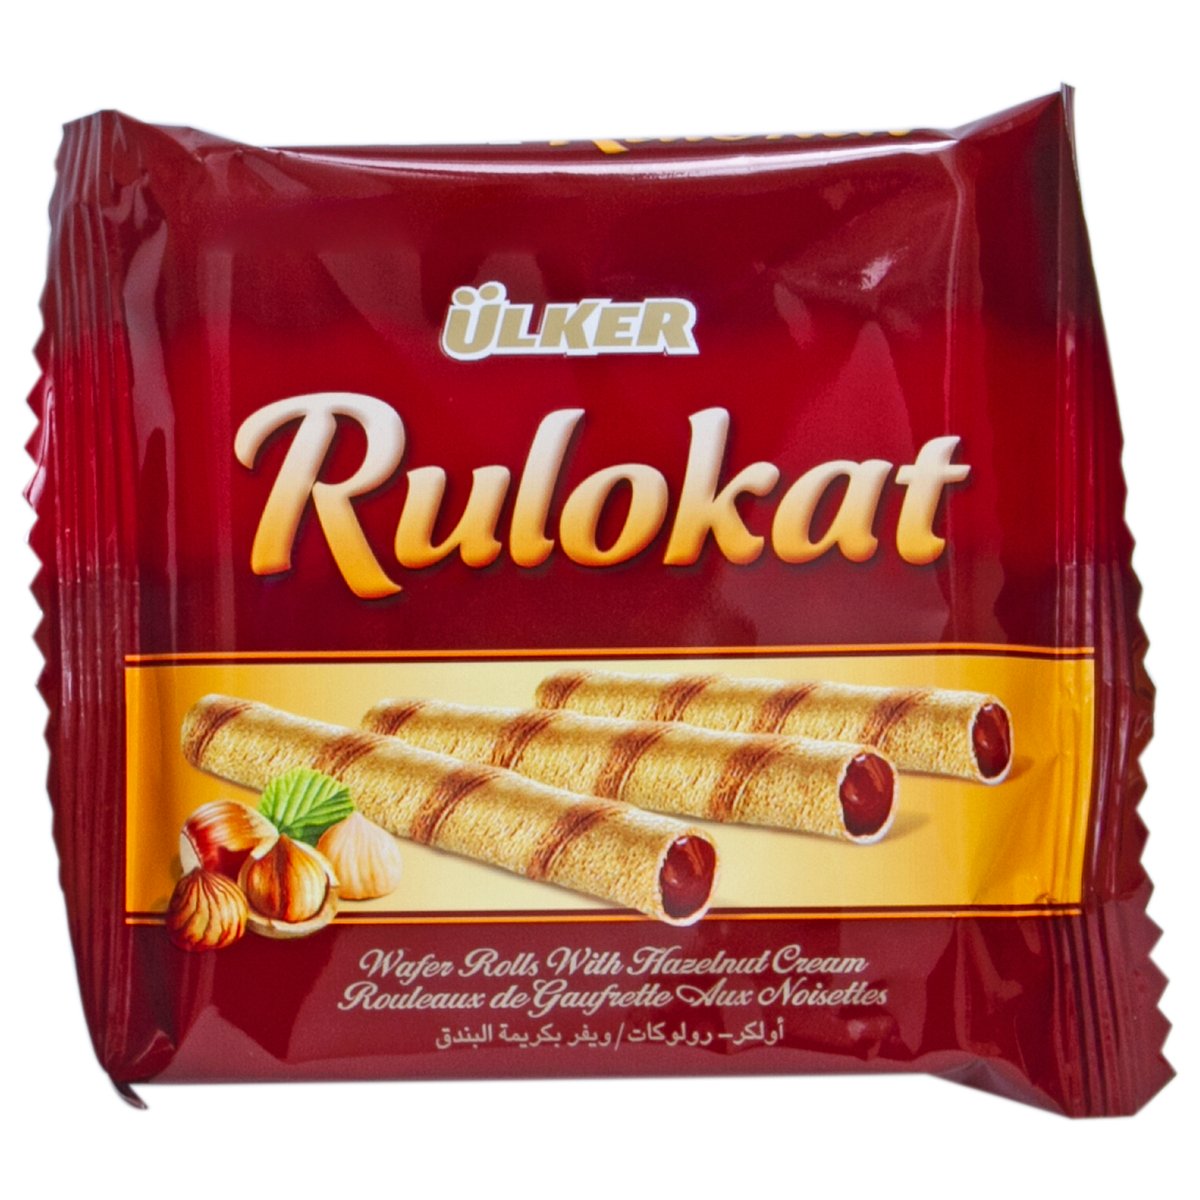 Ulker Rulokat Wafer Rolls 24 x 24 g